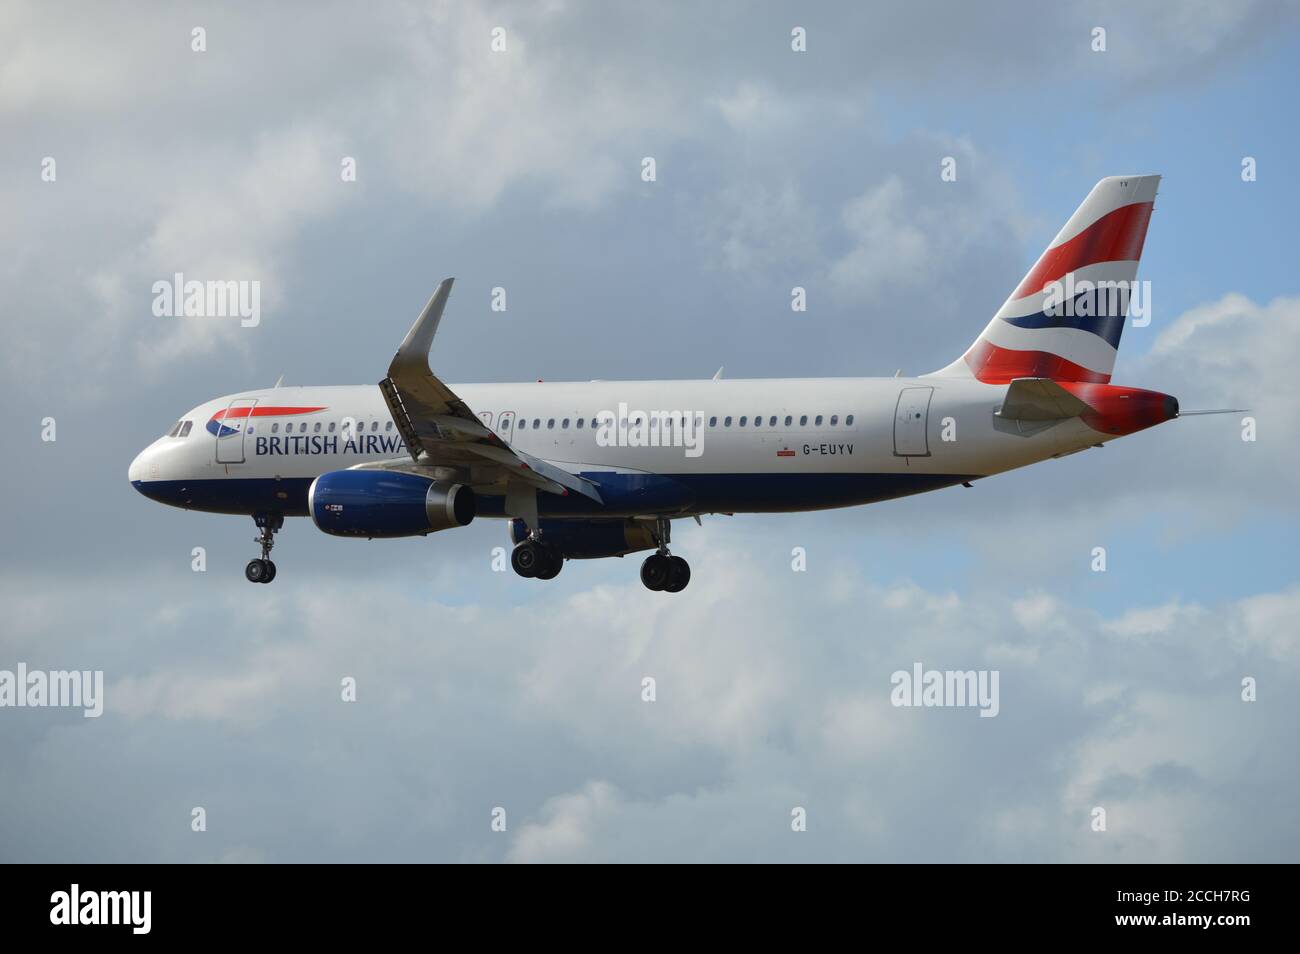 Londra, Regno Unito. 21 agosto 2020. British Airways Airbus A320-200 G-EUYV atterrando all'aeroporto di Heathrow. Foto Stock